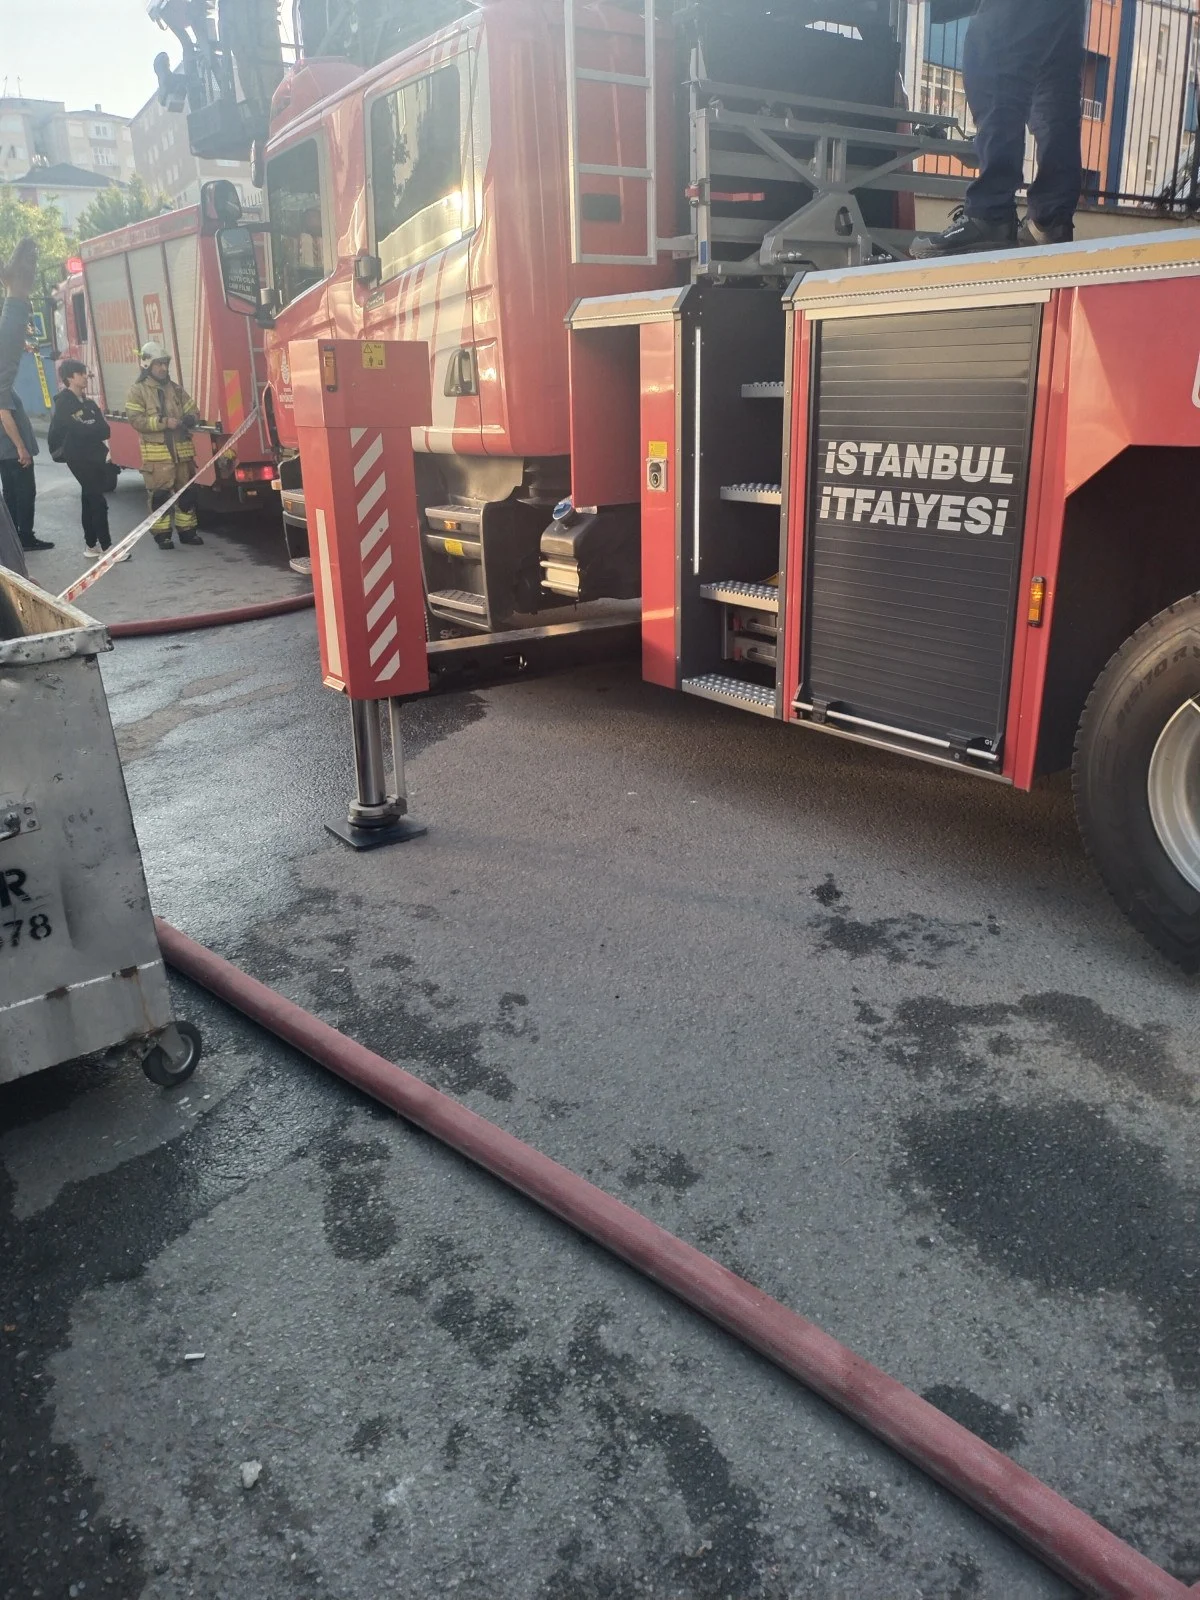 İstanbul Kartal'da Yangın Faciası! İstanbul Kartal'da Çıkan Yangında Hasan Kara Öldü! (2)